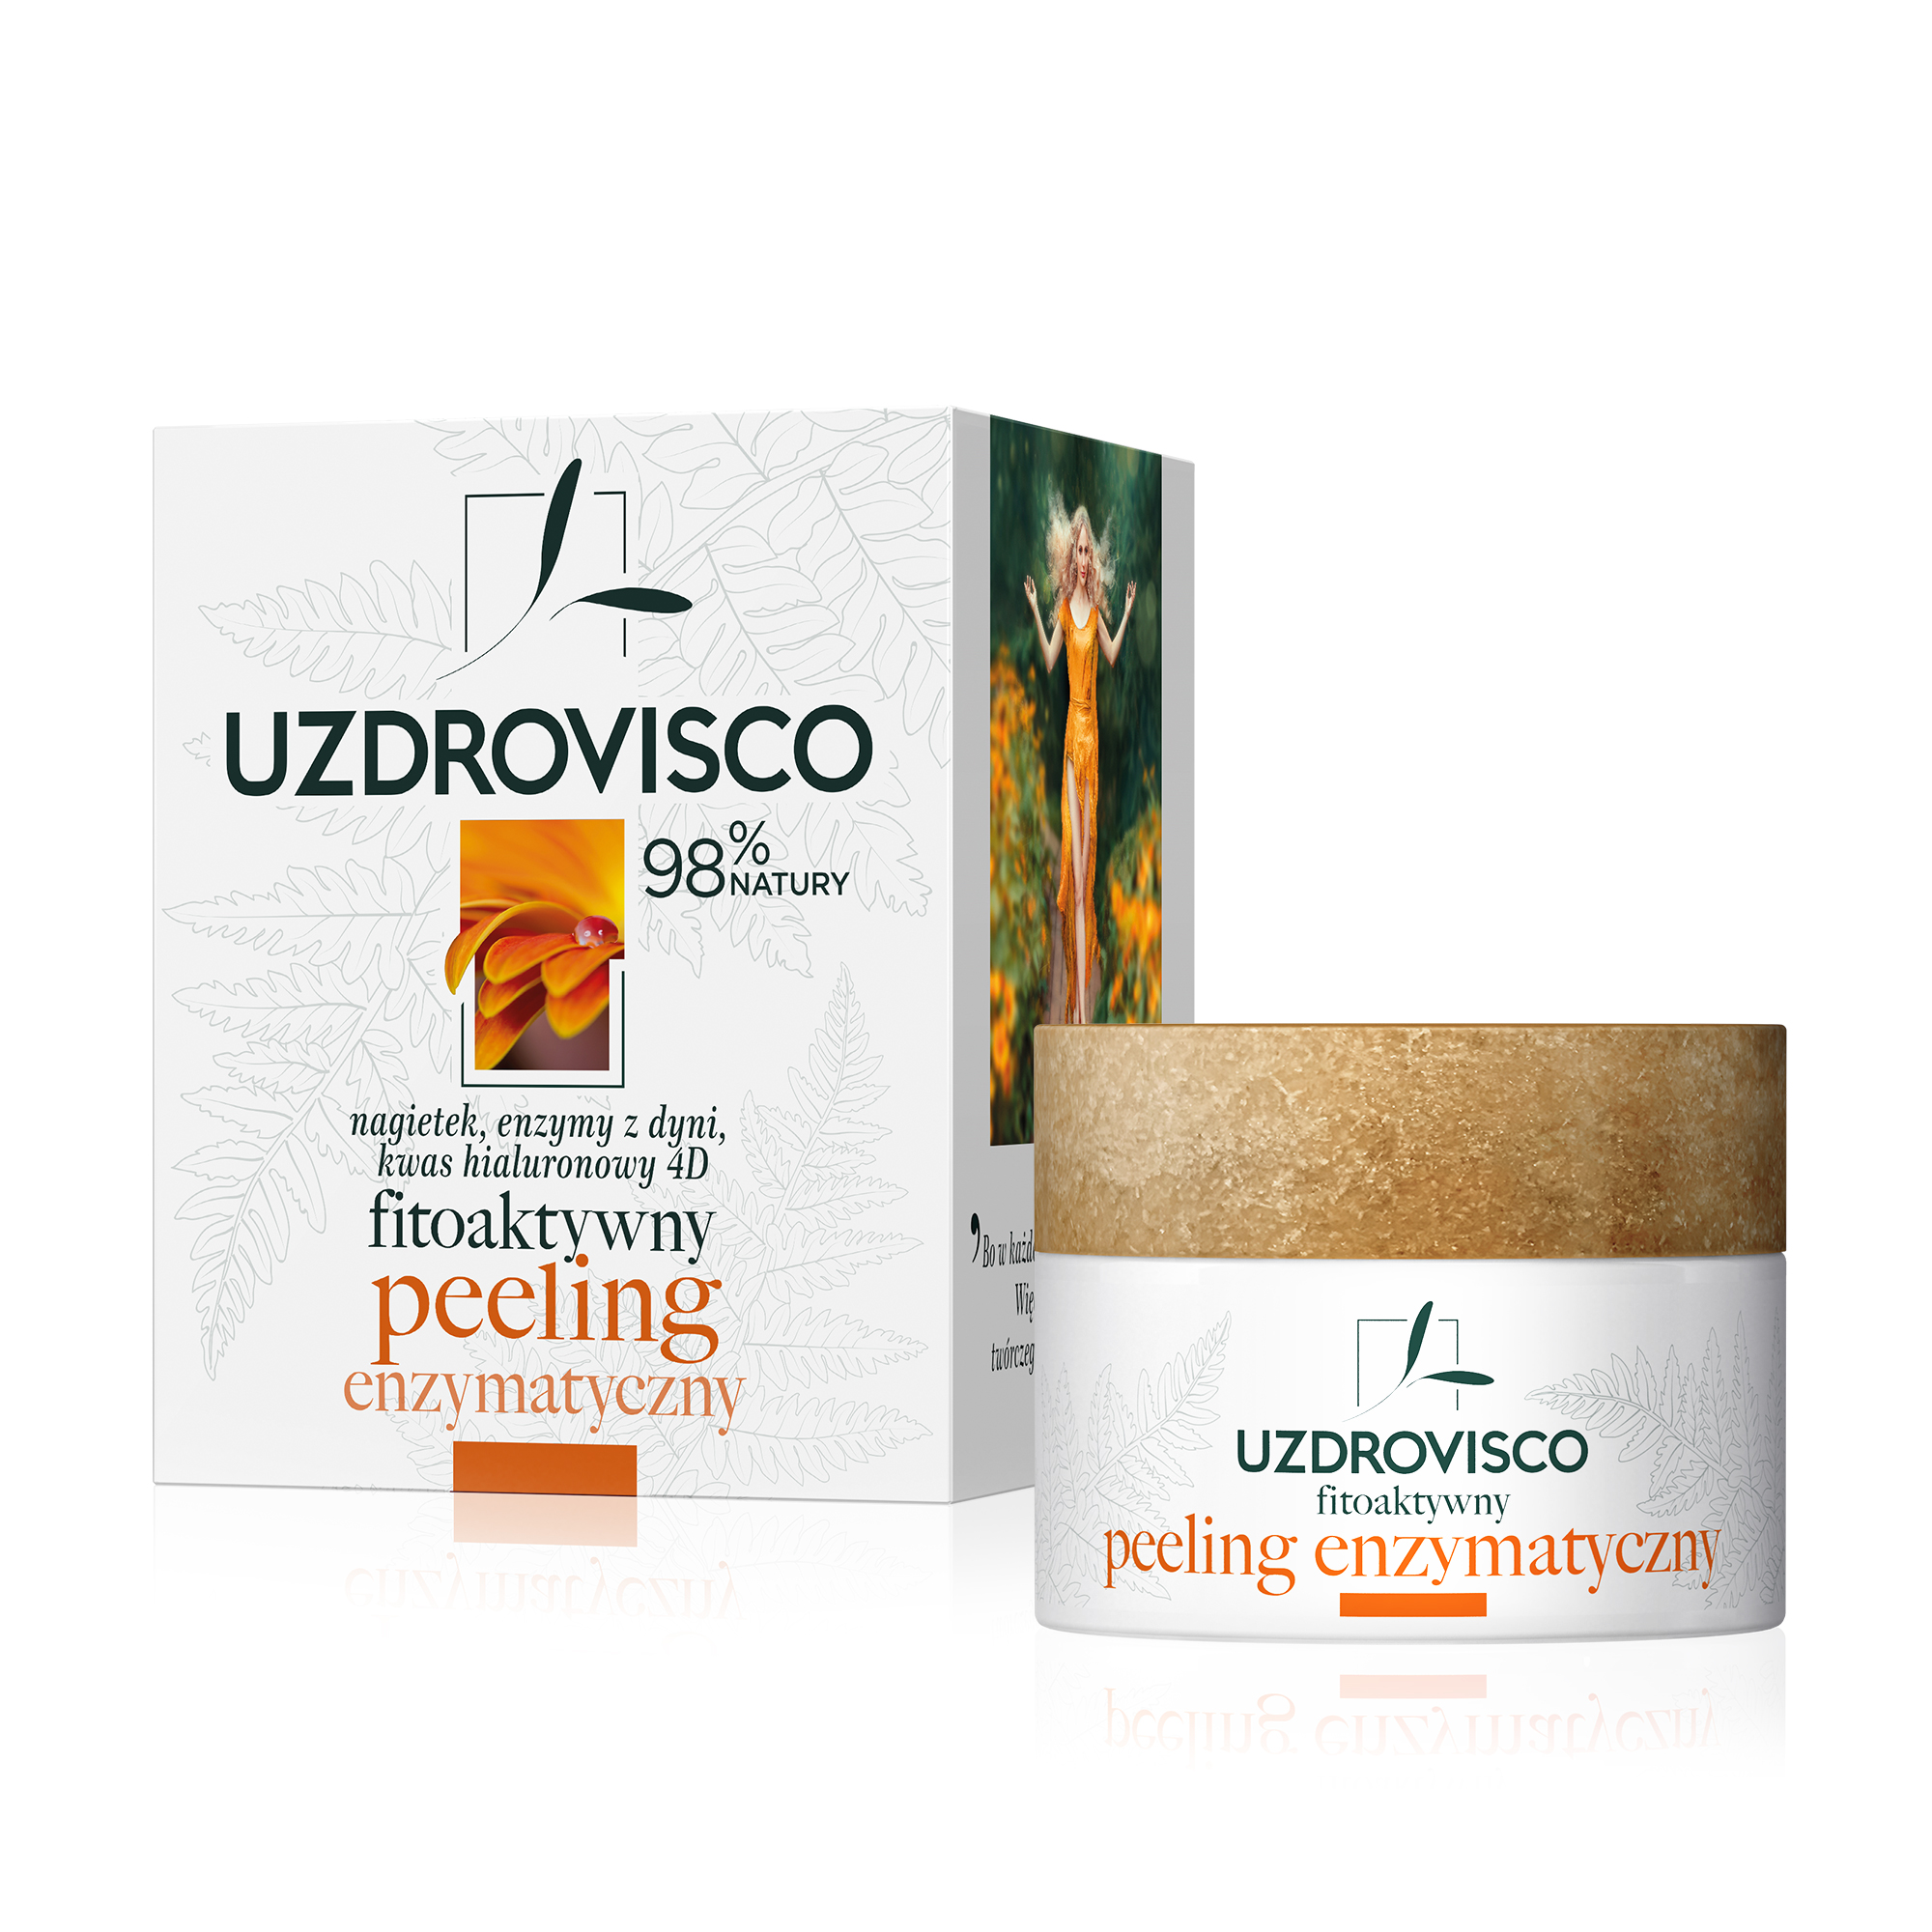 UZDROVISCO -  UZDROVISCO Fitoaktywny peeling enzymatyczny